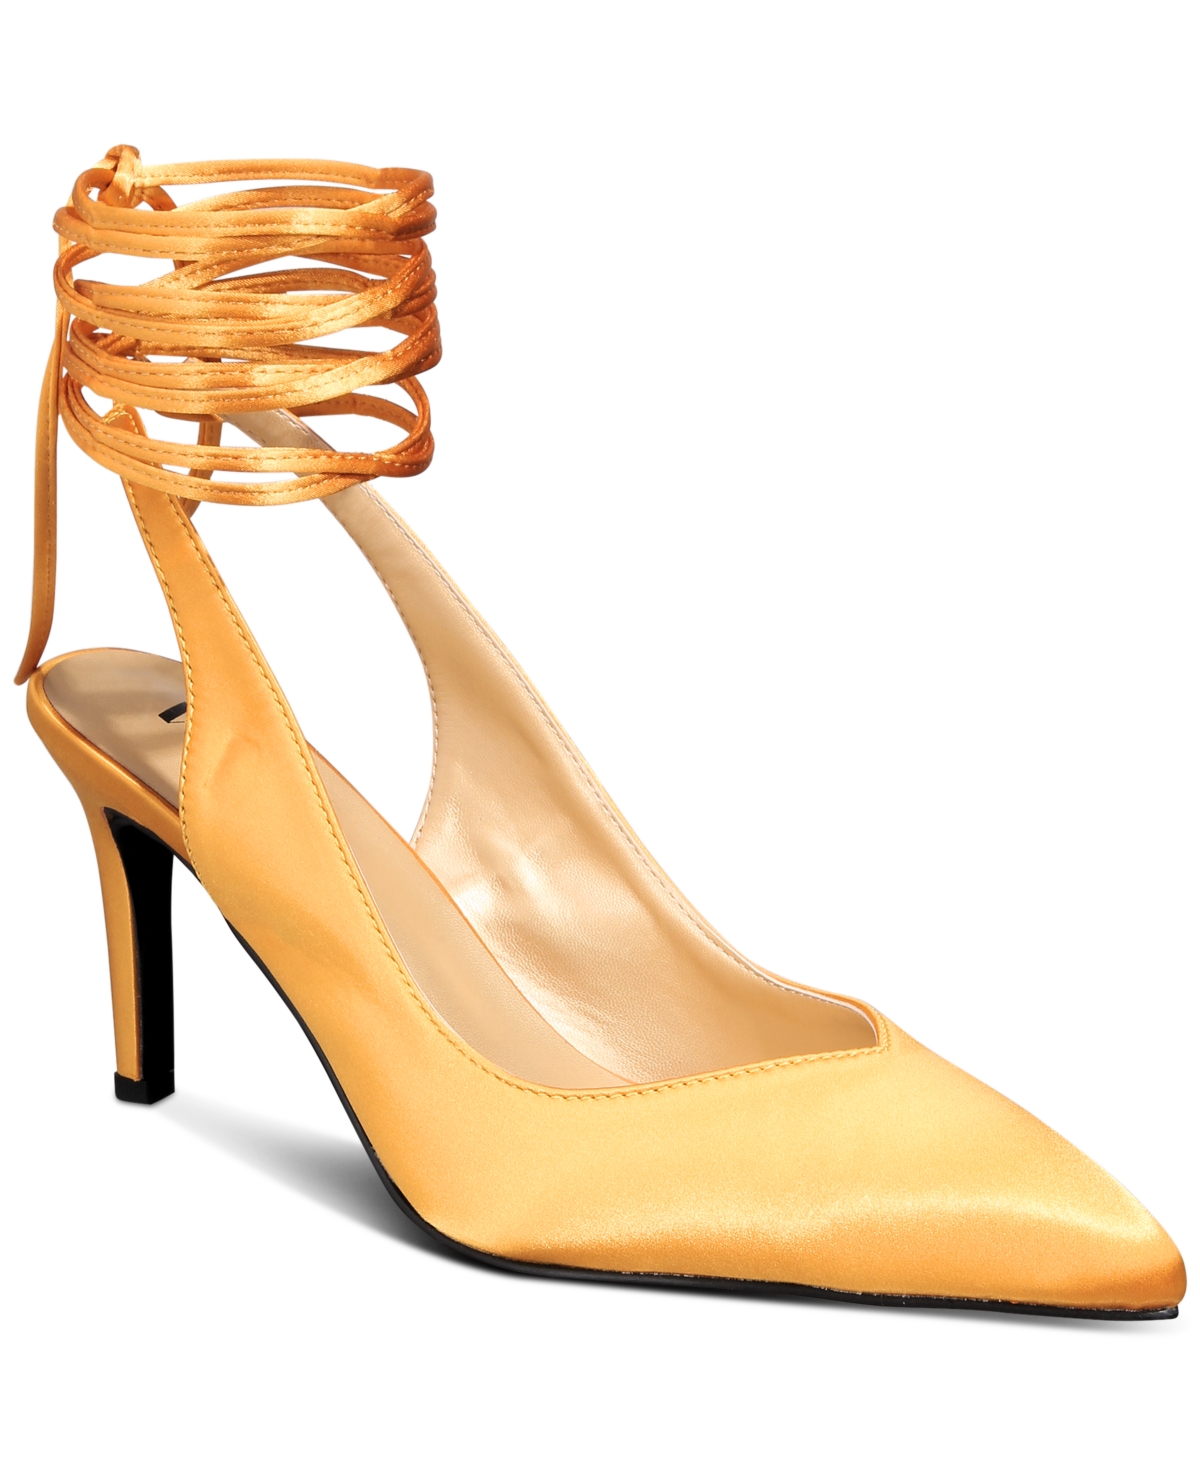 Women's Estelle Ankle-Tie Dress Pumps-Extended sizes 9-14 - Gold